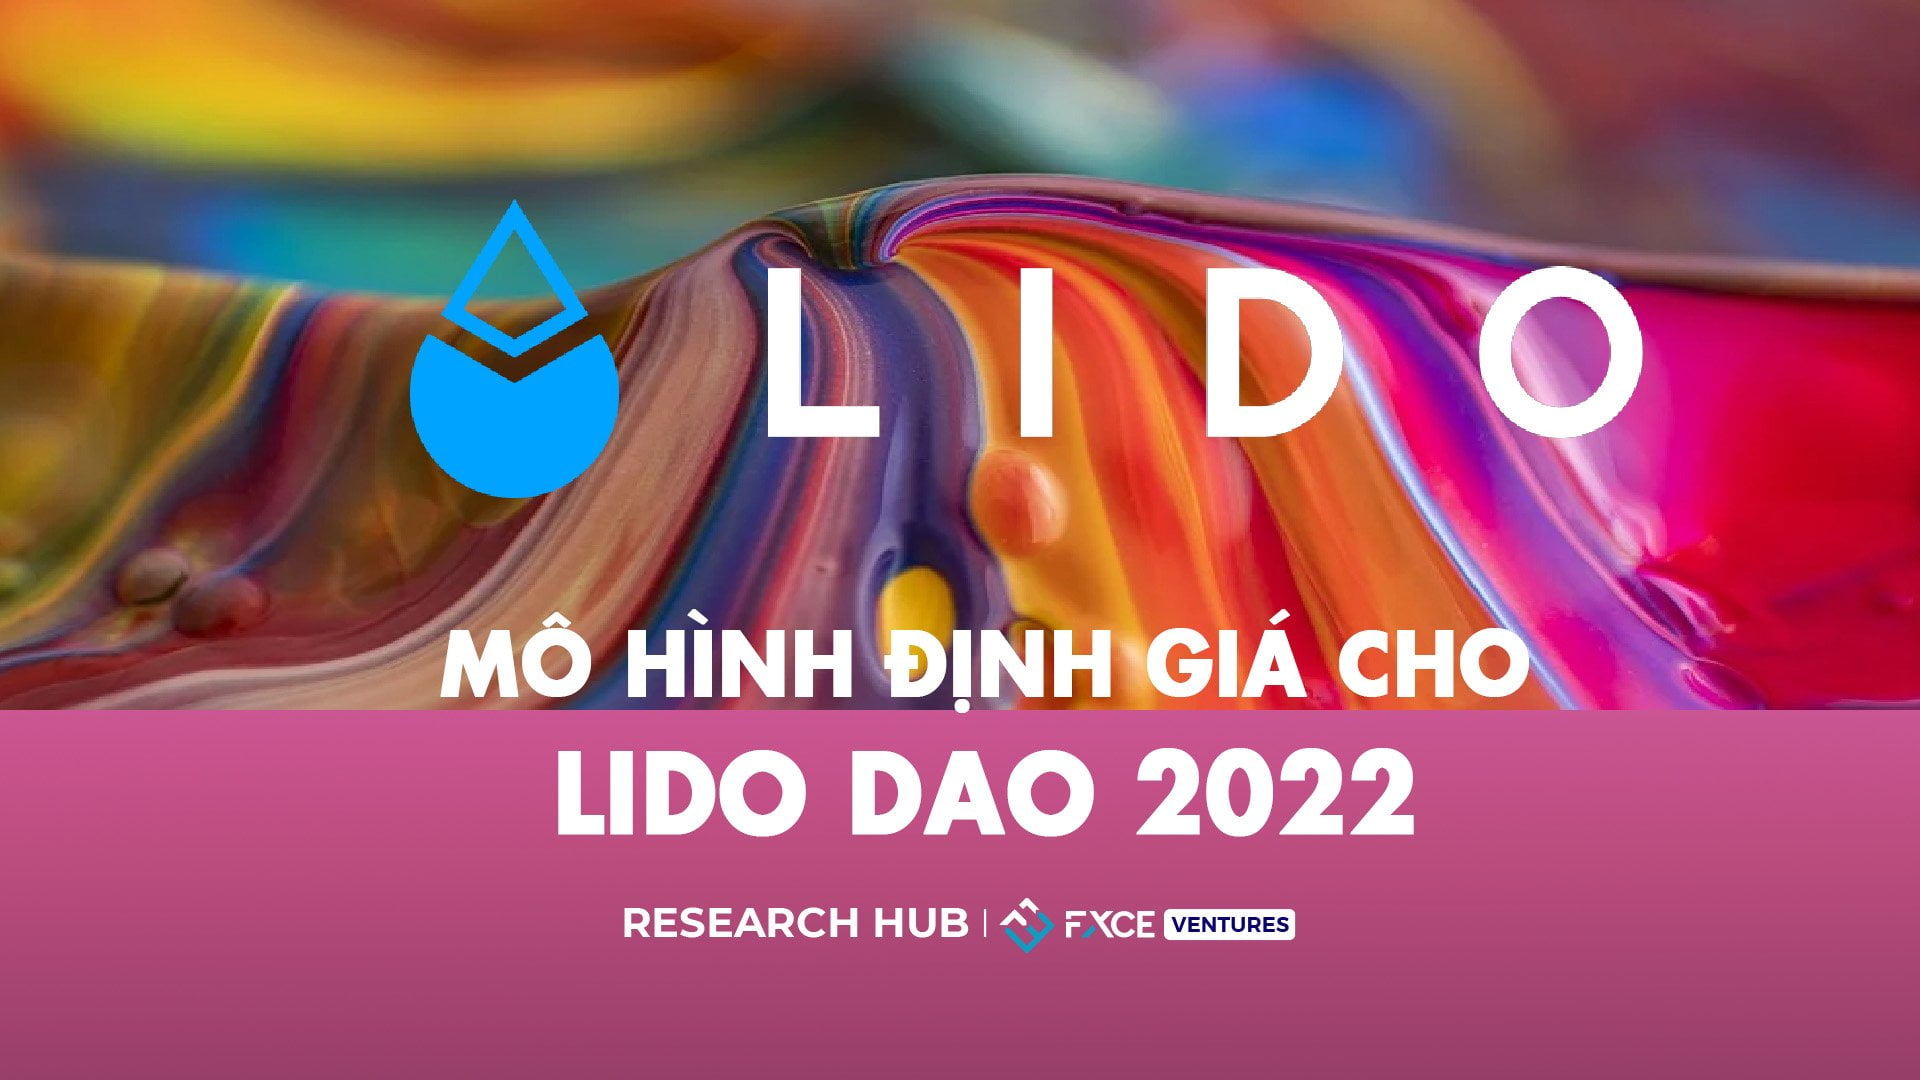 Mô hình định giá cho Lido DAO 2022